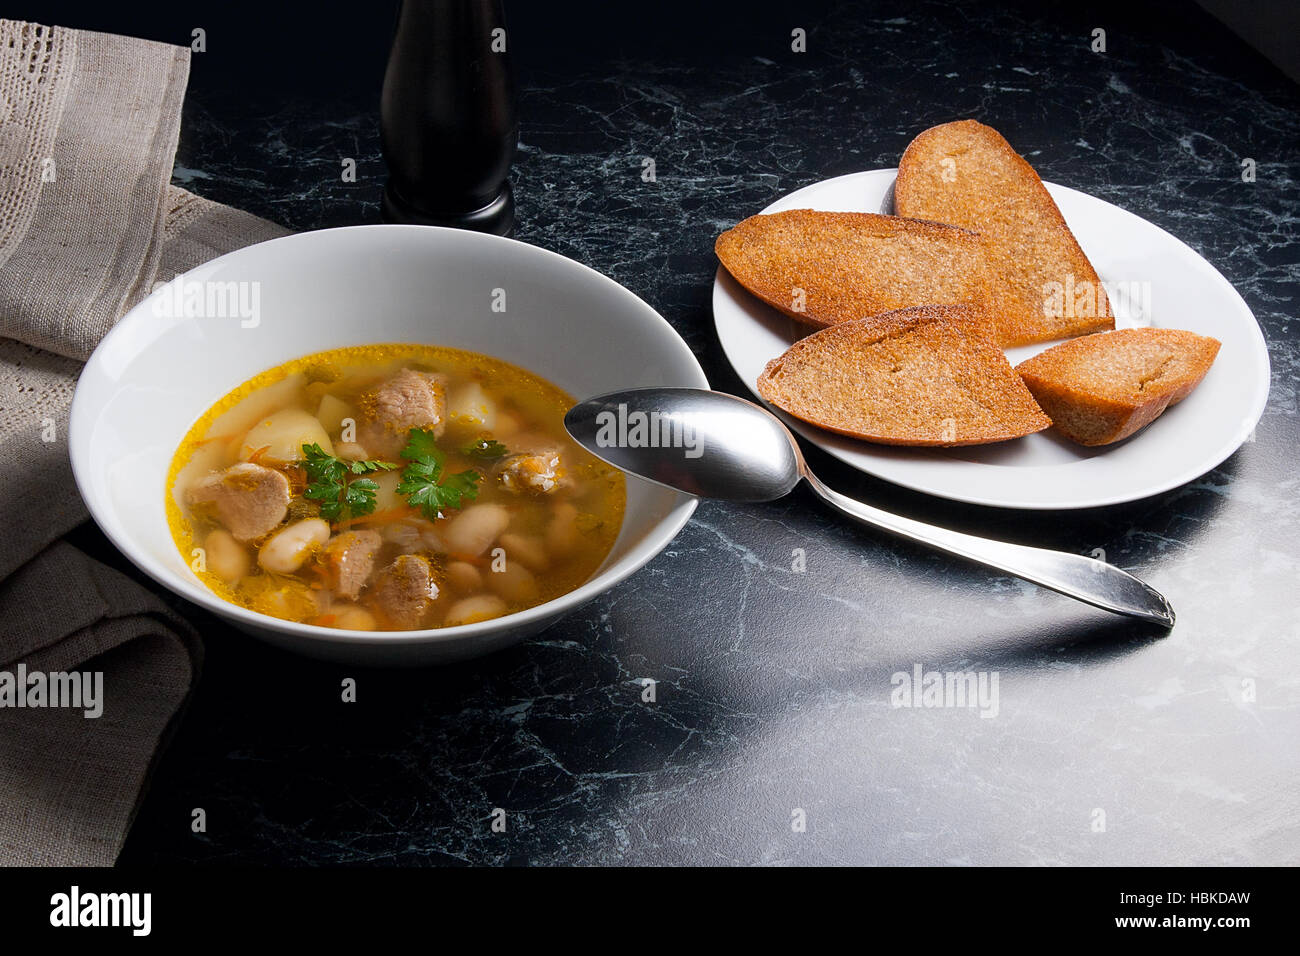 Bohnensuppe in weiße Schüssel mit Metalllöffel auf einem schwarzen Stein Hintergrund. Einige toast auf weißen Teller und schwarze Mühle für Pfeffer auf braunem Tuch. Stockfoto